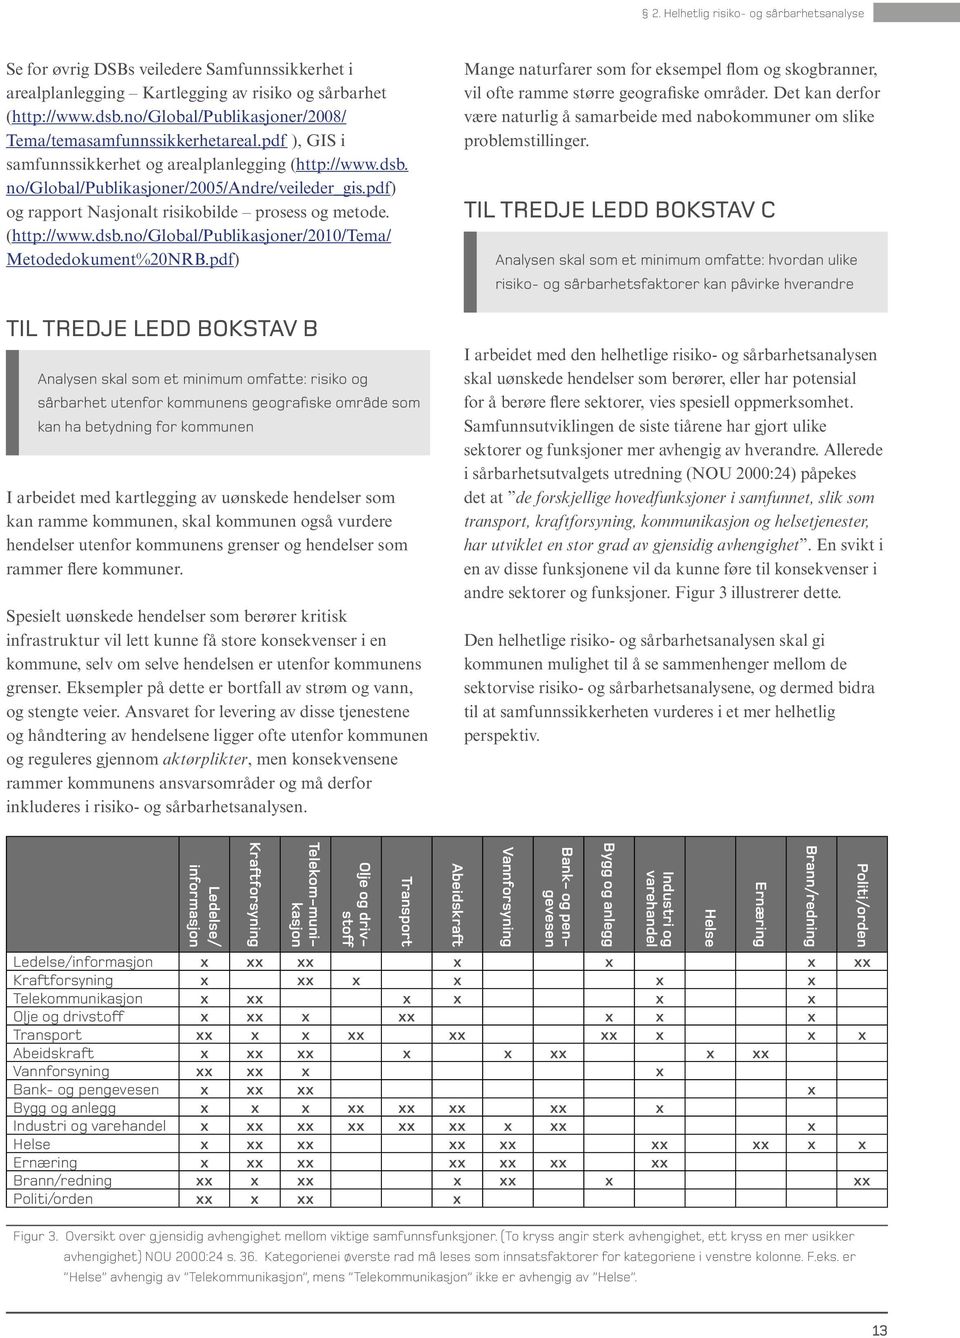 pdf) og rapport Nasjonalt risikobilde prosess og metode. (http://www.dsb.no/global/publikasjoner/2010/tema/ Metodedokument%20NRB.